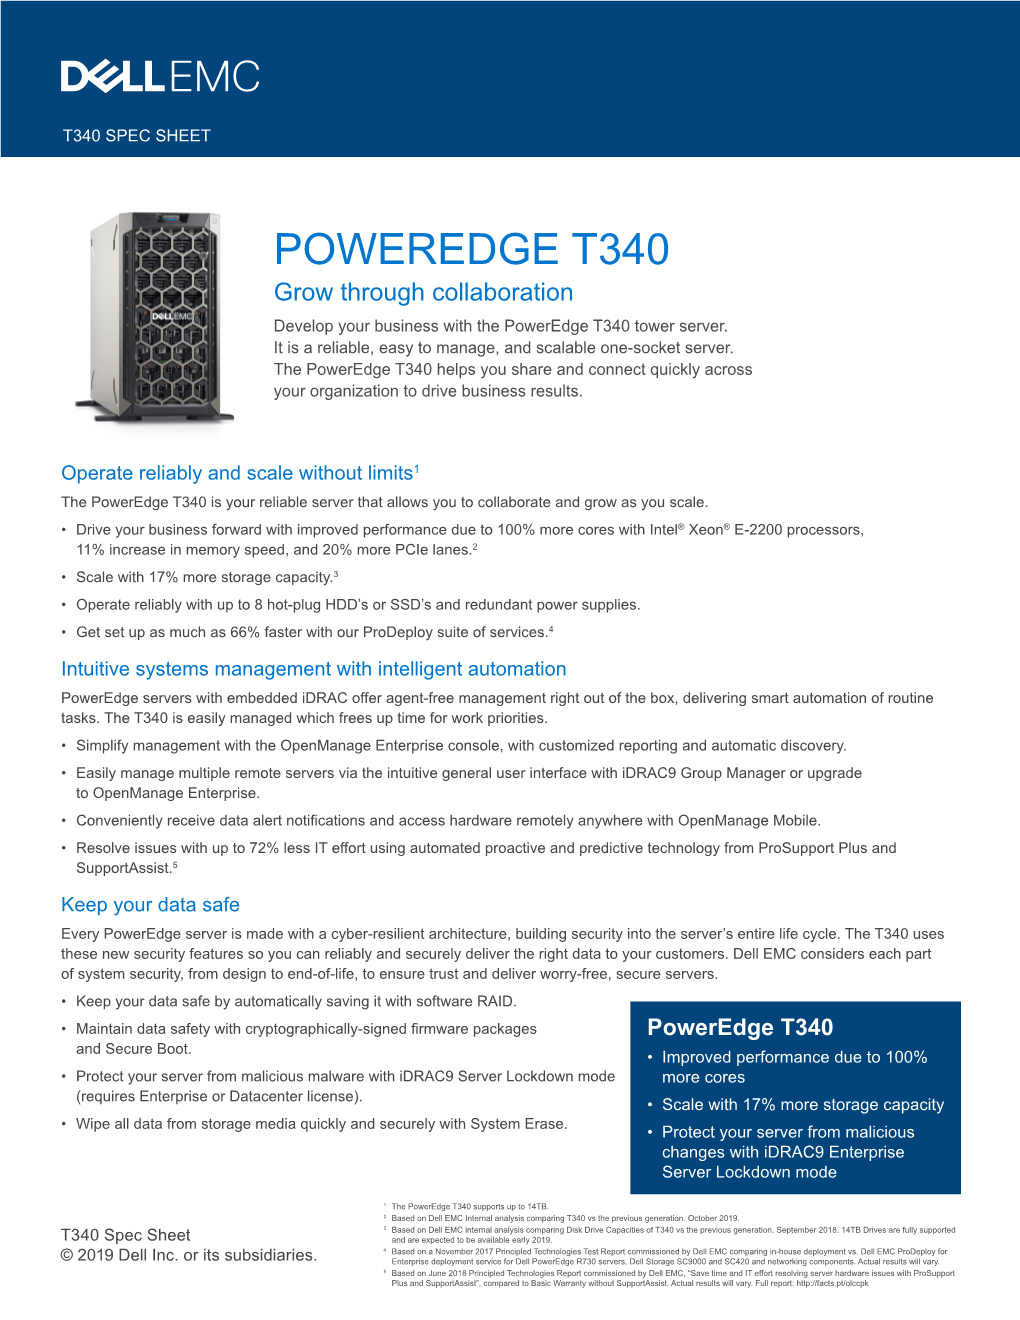 Dell EMC Poweredge T340 Spec Sheet